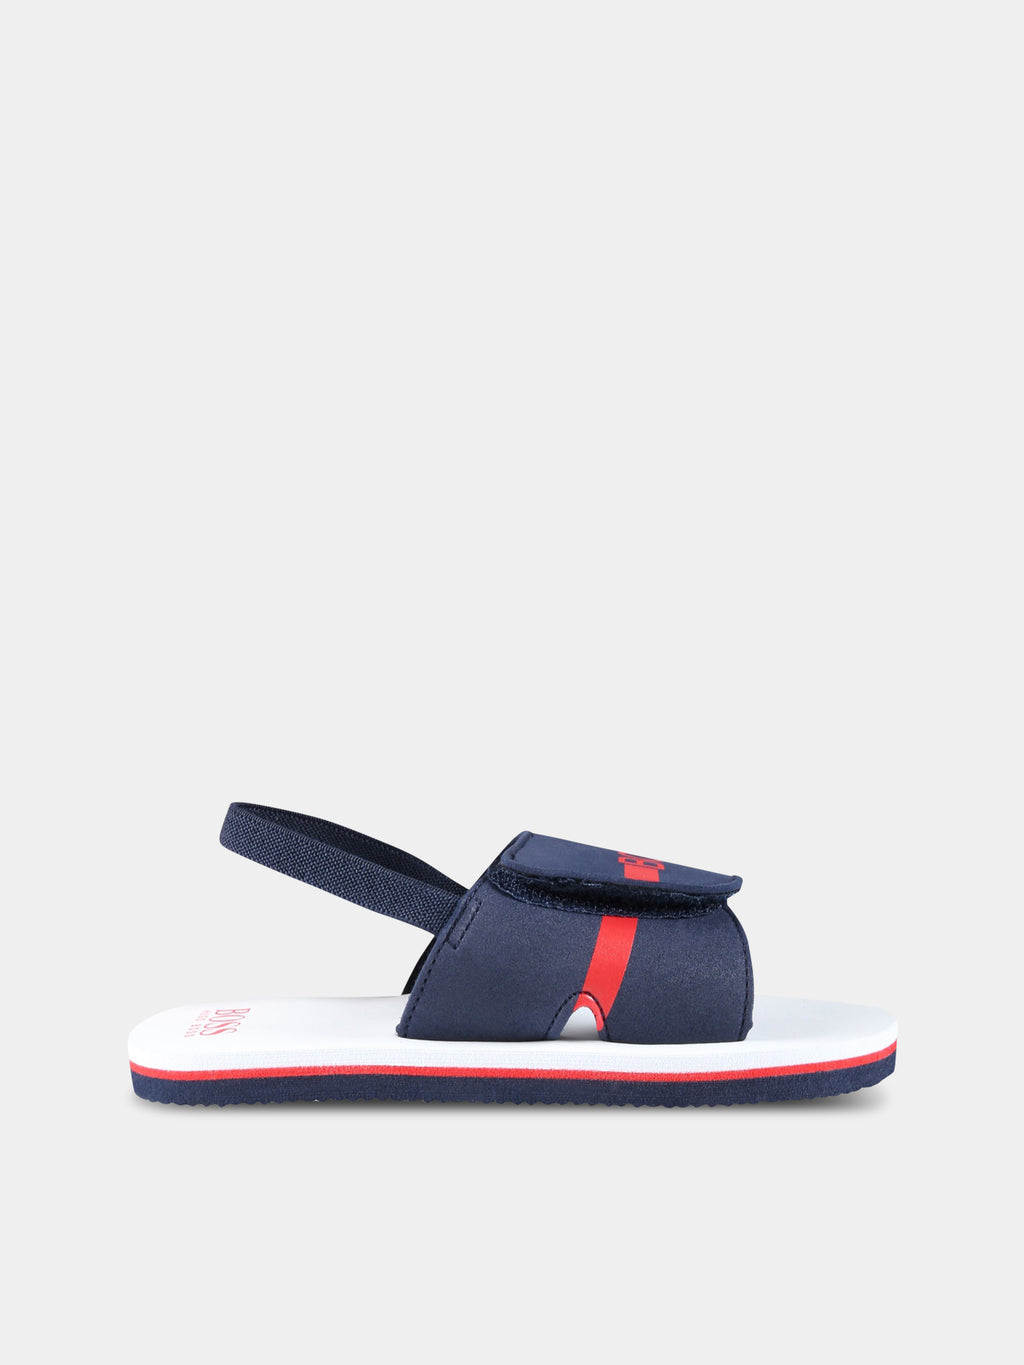 Sandali blu per bambino con logo rosso